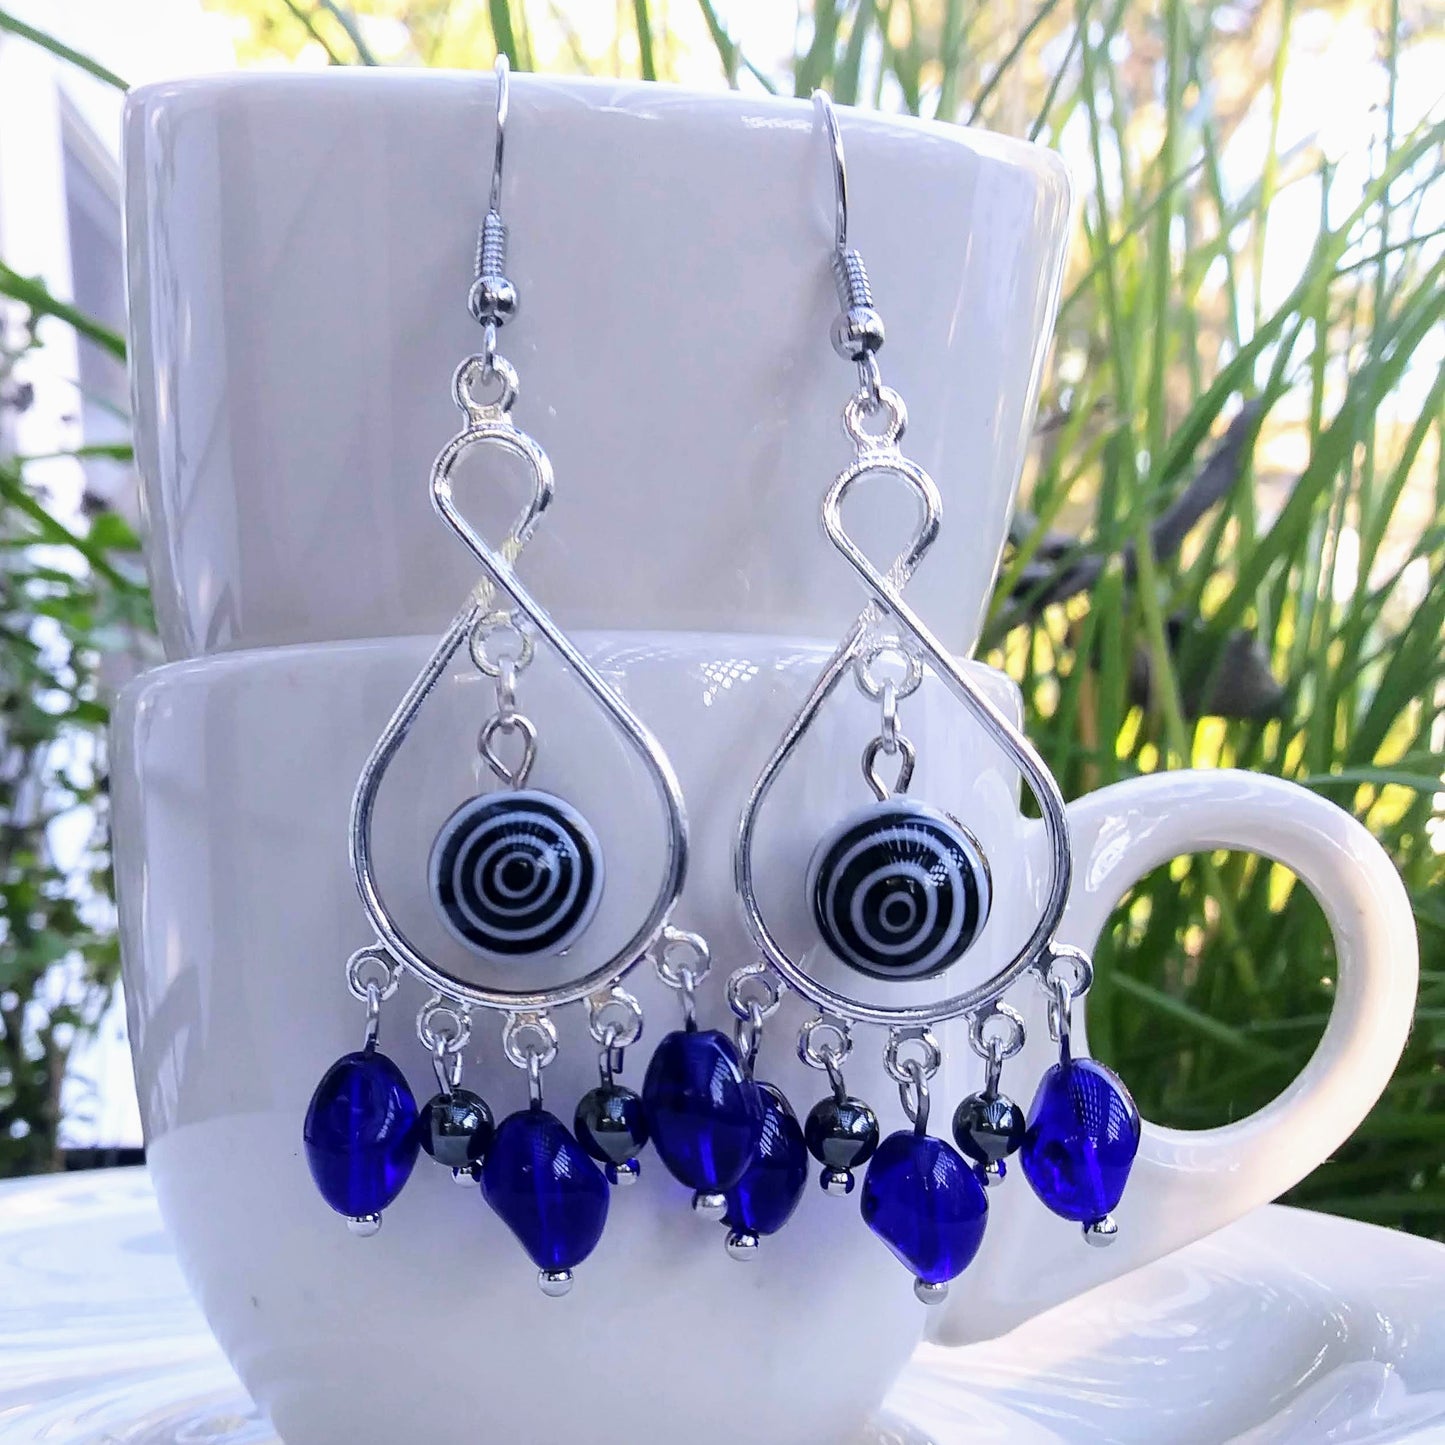 Cobalt Blue Evil Eye Chandelier Earrings in Hematite & Glass